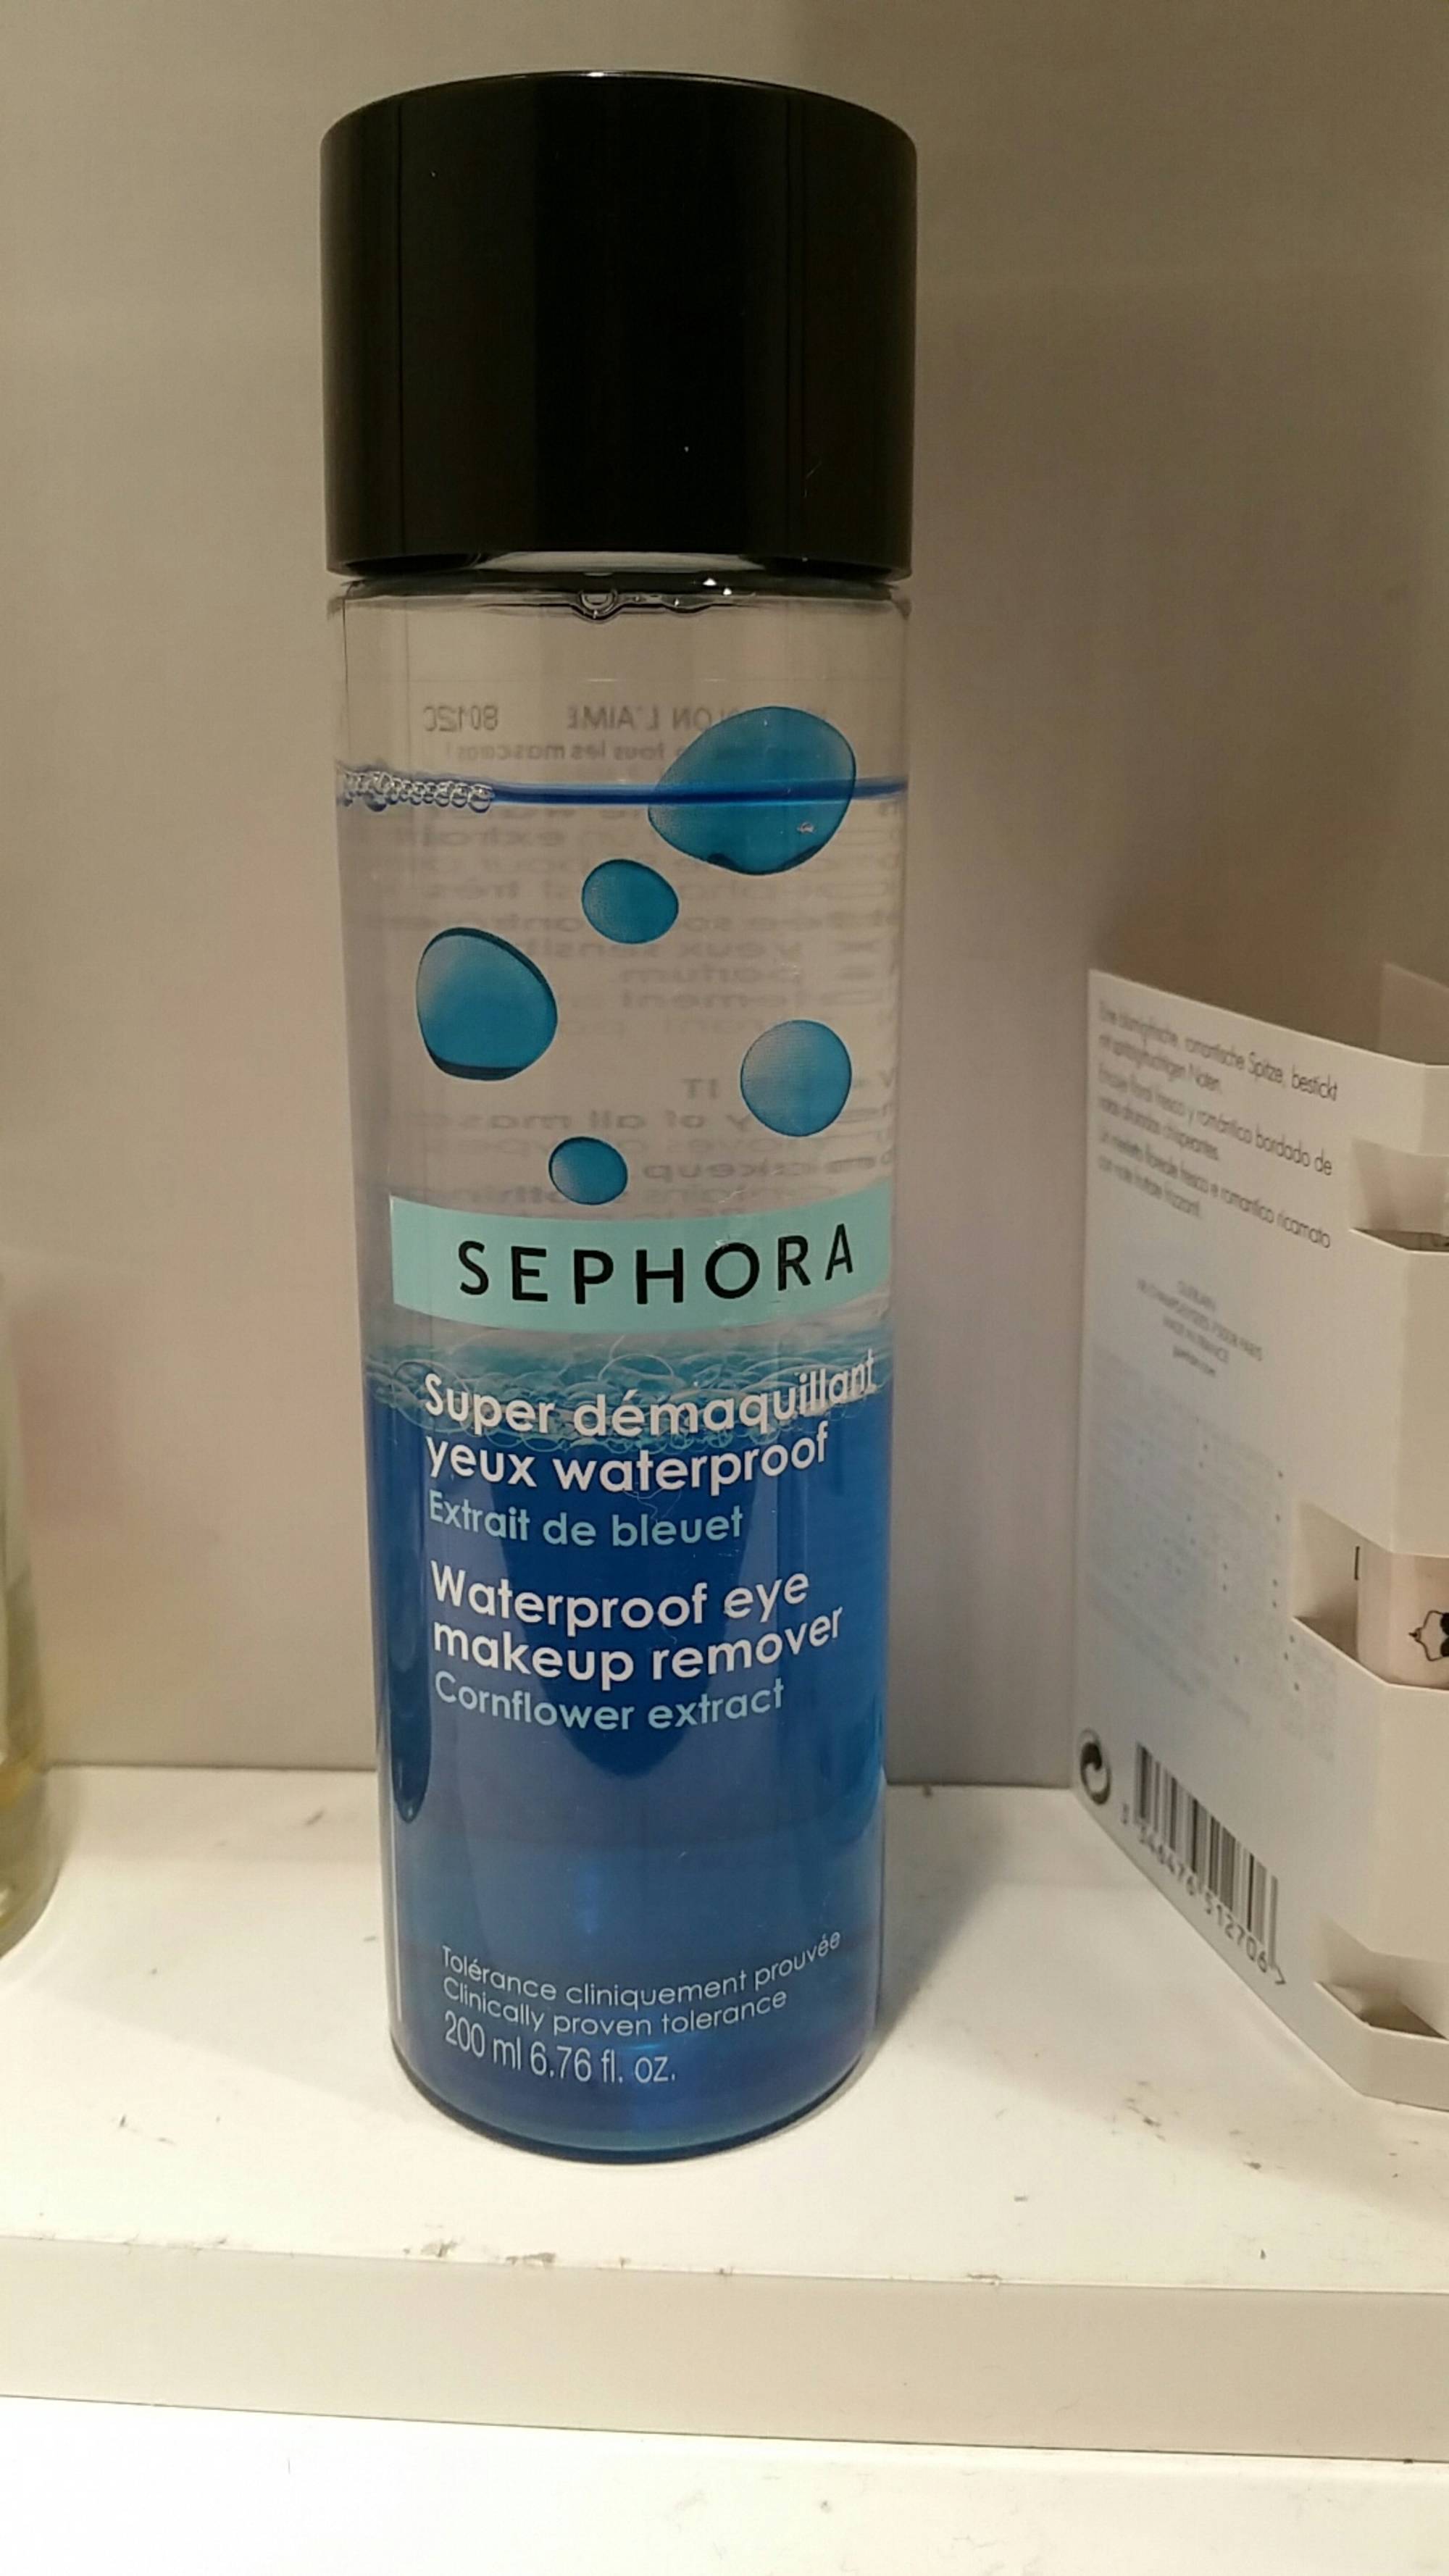 SEPHORA - Super démaquillant extrait de bleuet